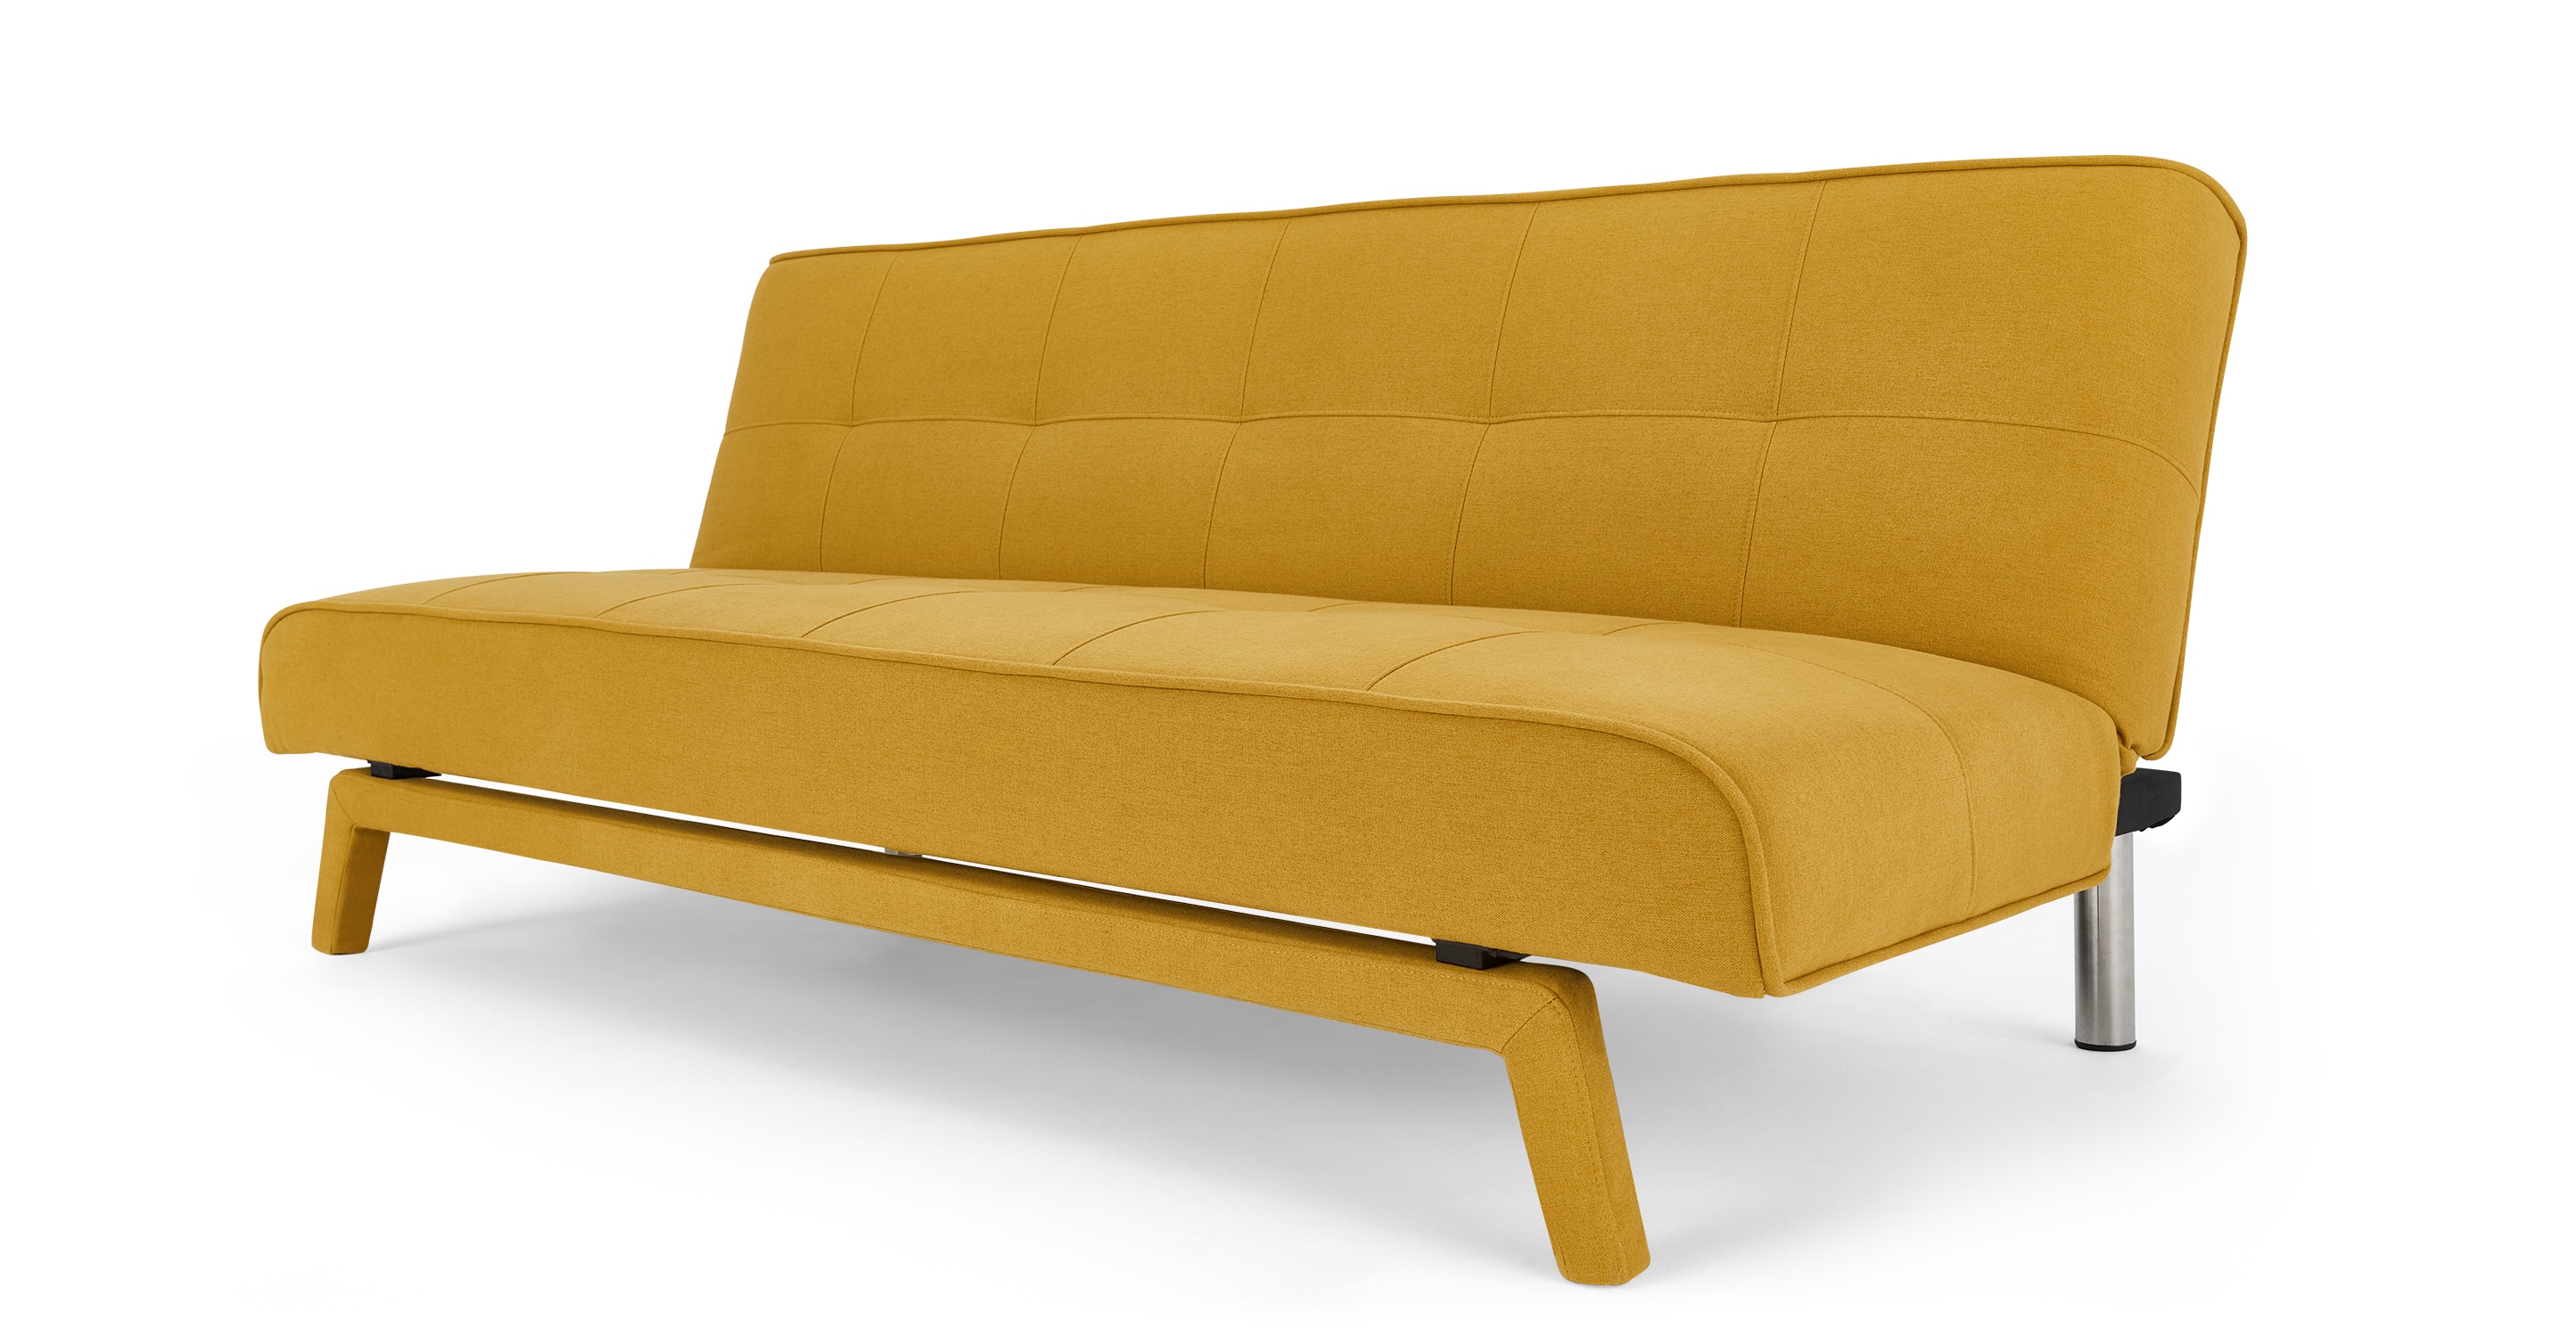 yoko sofa bed atomic orange